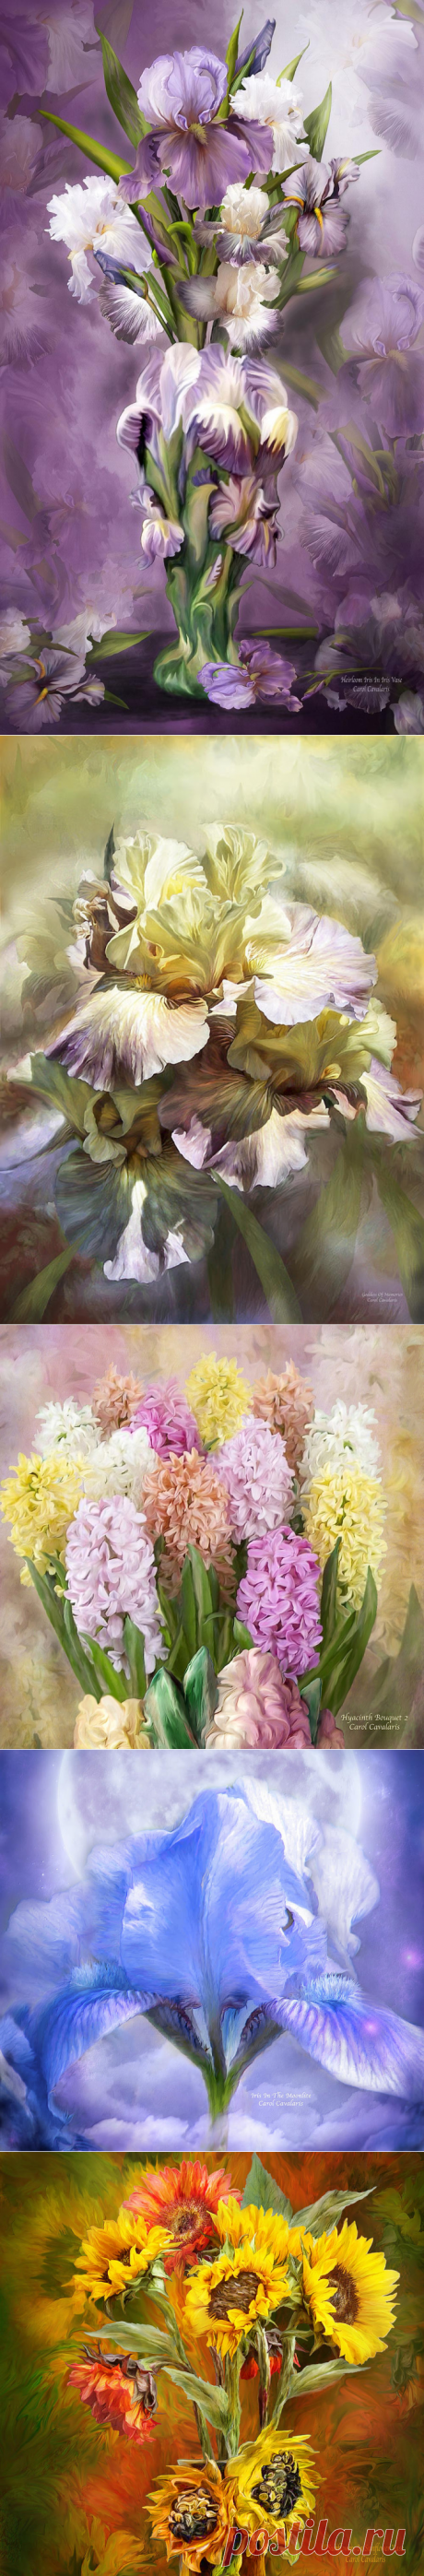 Цветы, излучающие свет... Цифровая живопись художницы Carol Cavalaris (США)